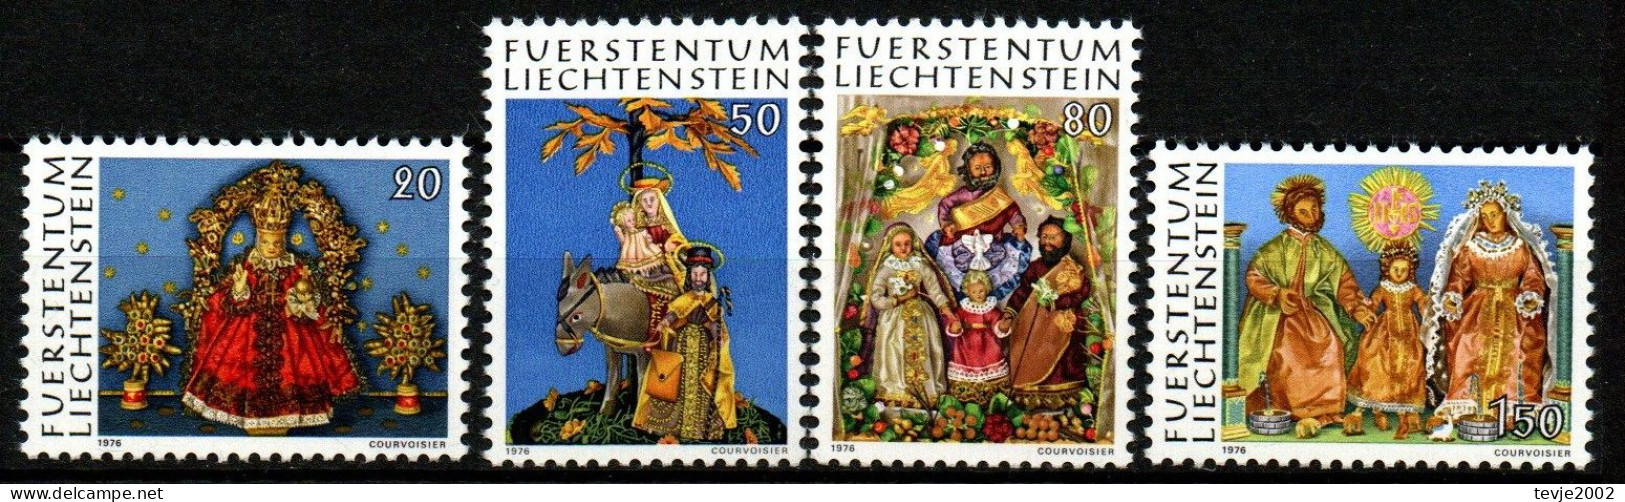 Liechtenstein 1976 - Mi.Nr. 662 - 665 - Postfrisch MNH - Weihnachten Christmas Noel - Ungebraucht